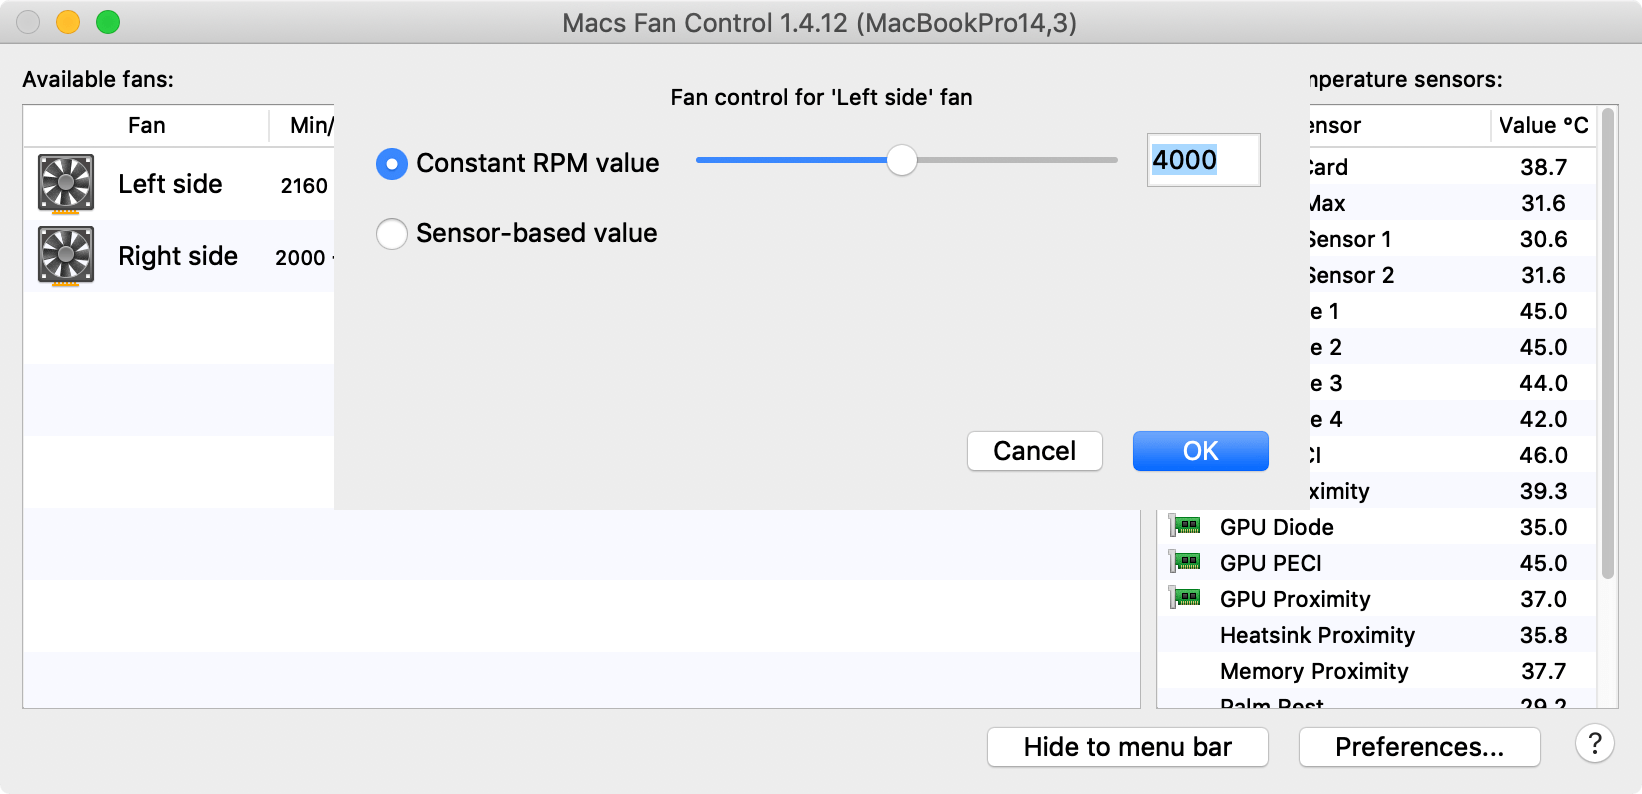 macs fan control pro license key crack